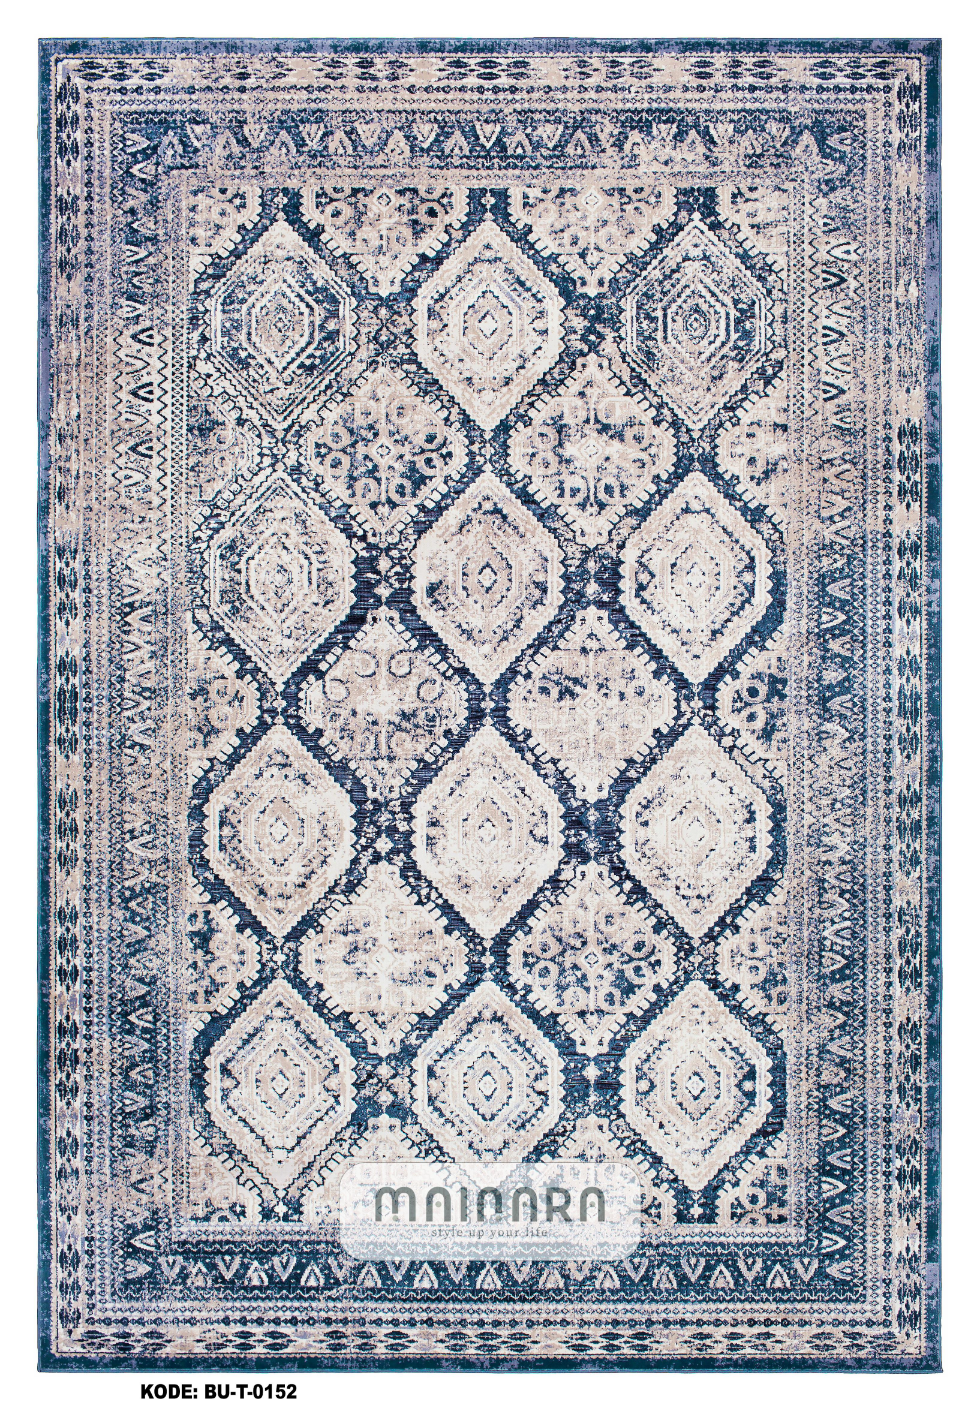 Karpet Tradisional (BU-T-0152) - Blue,Grey